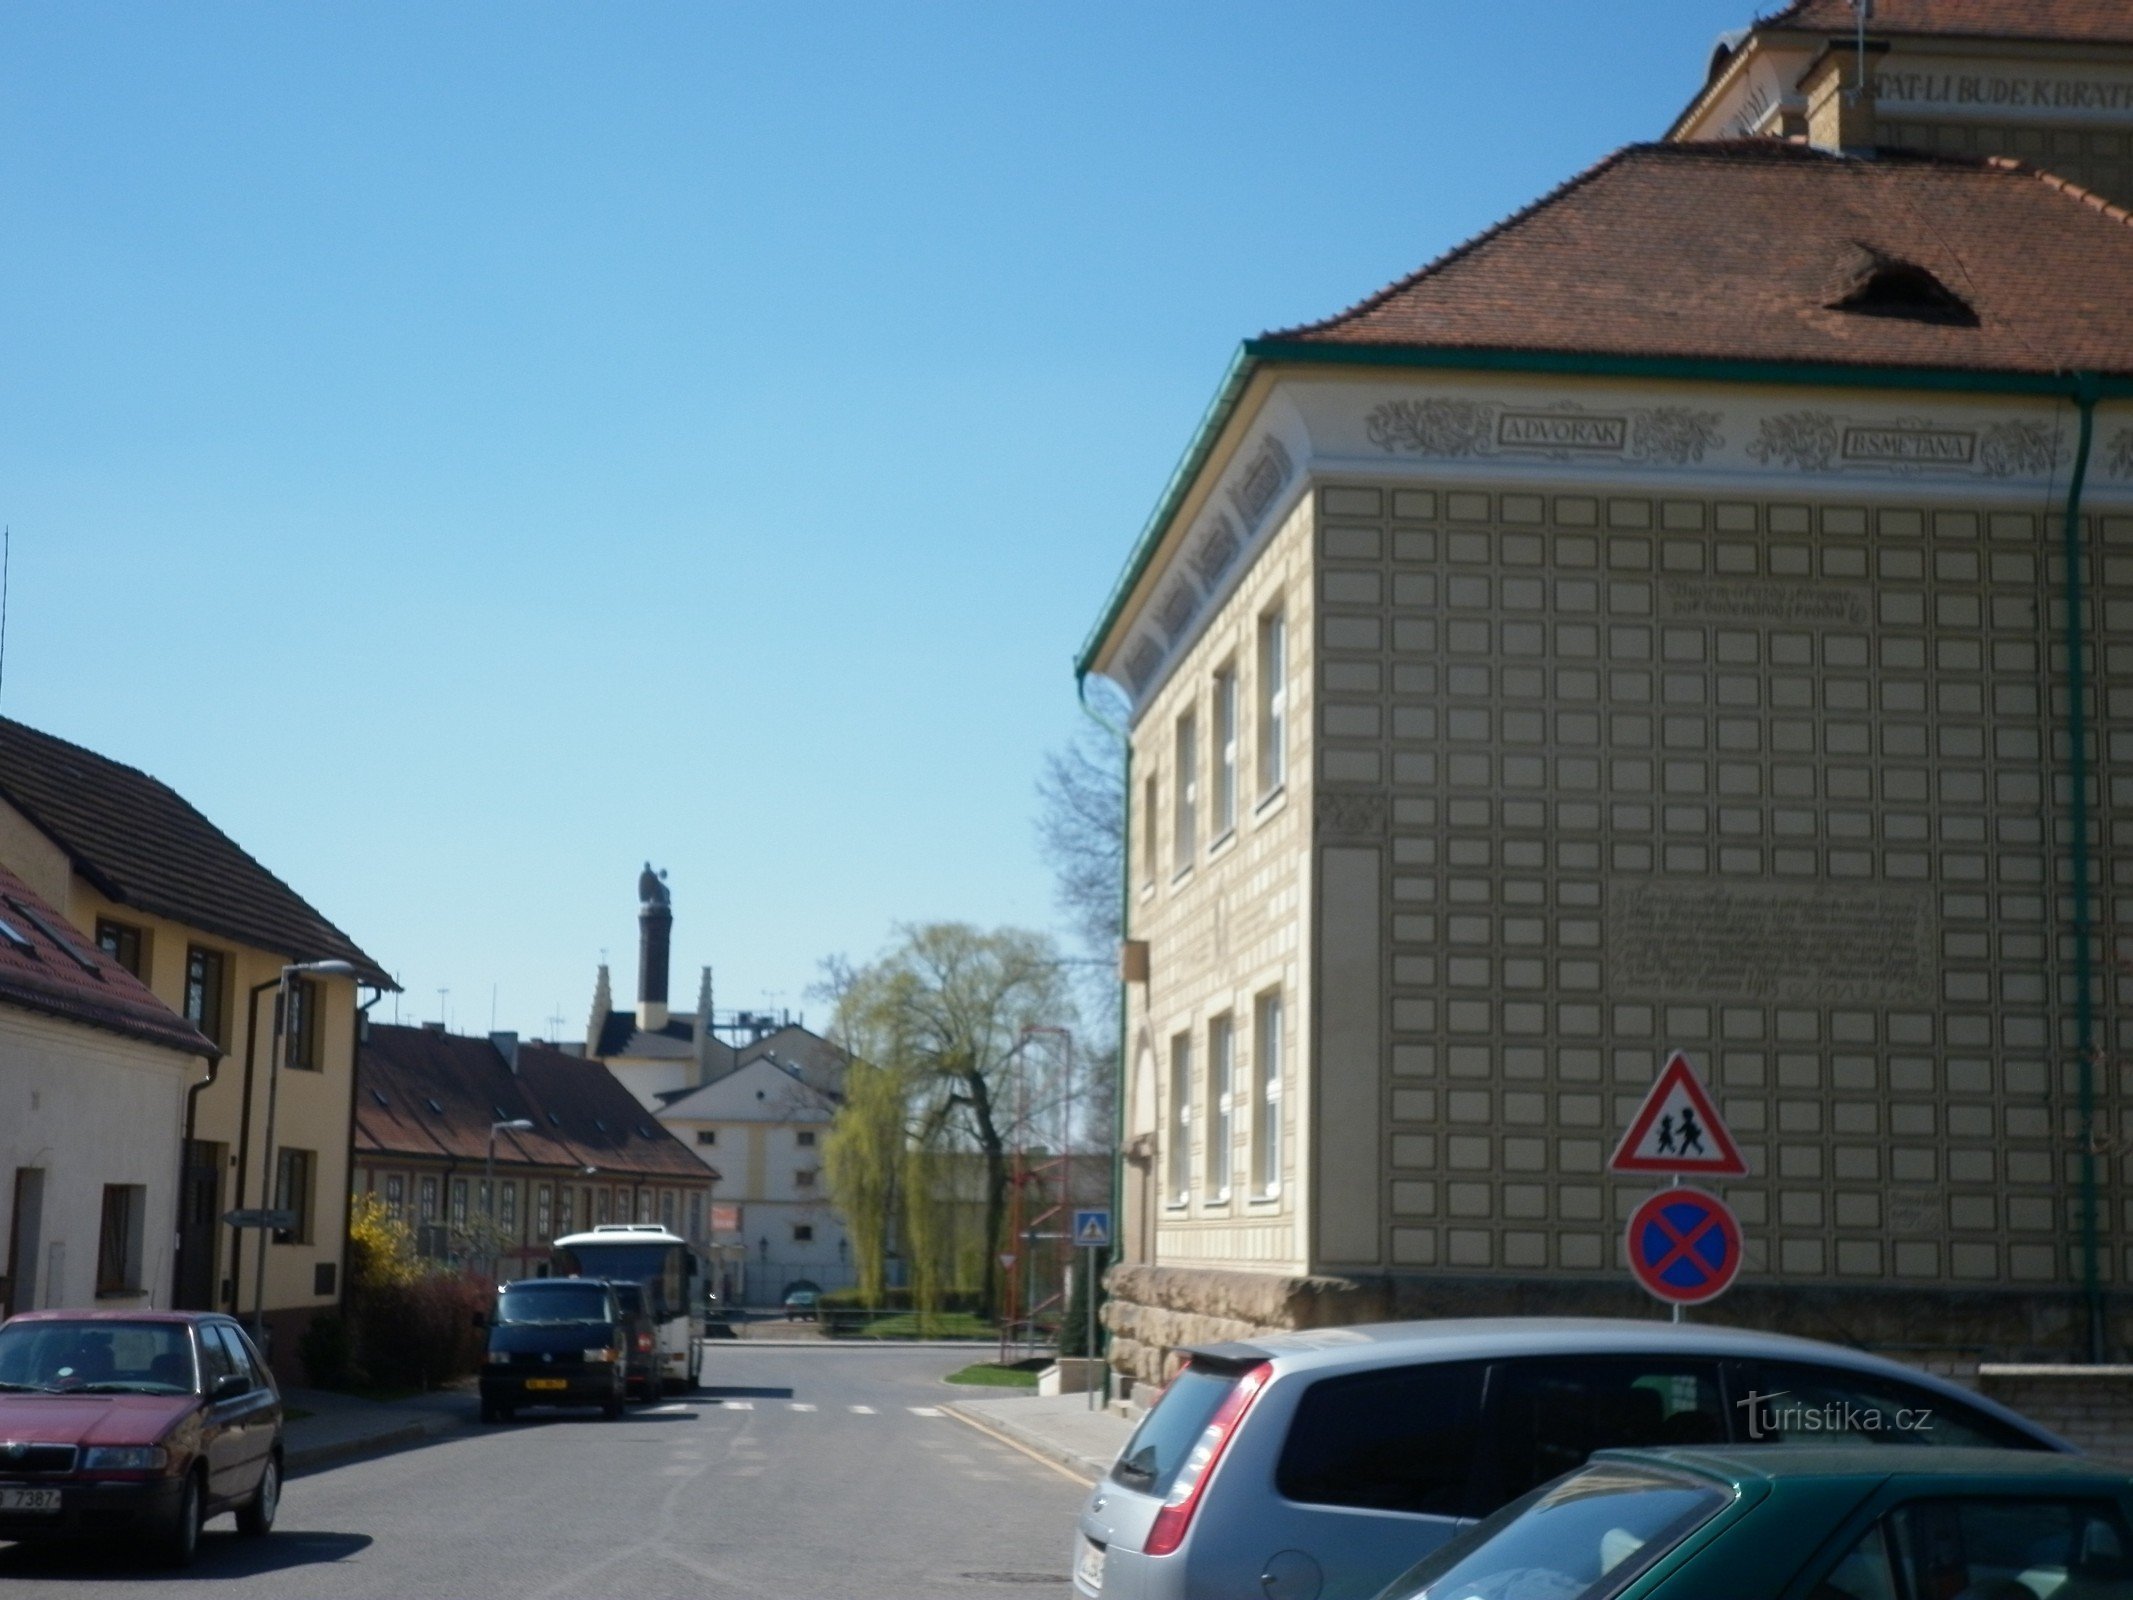 クルショヴィツェの小学校と幼稚園